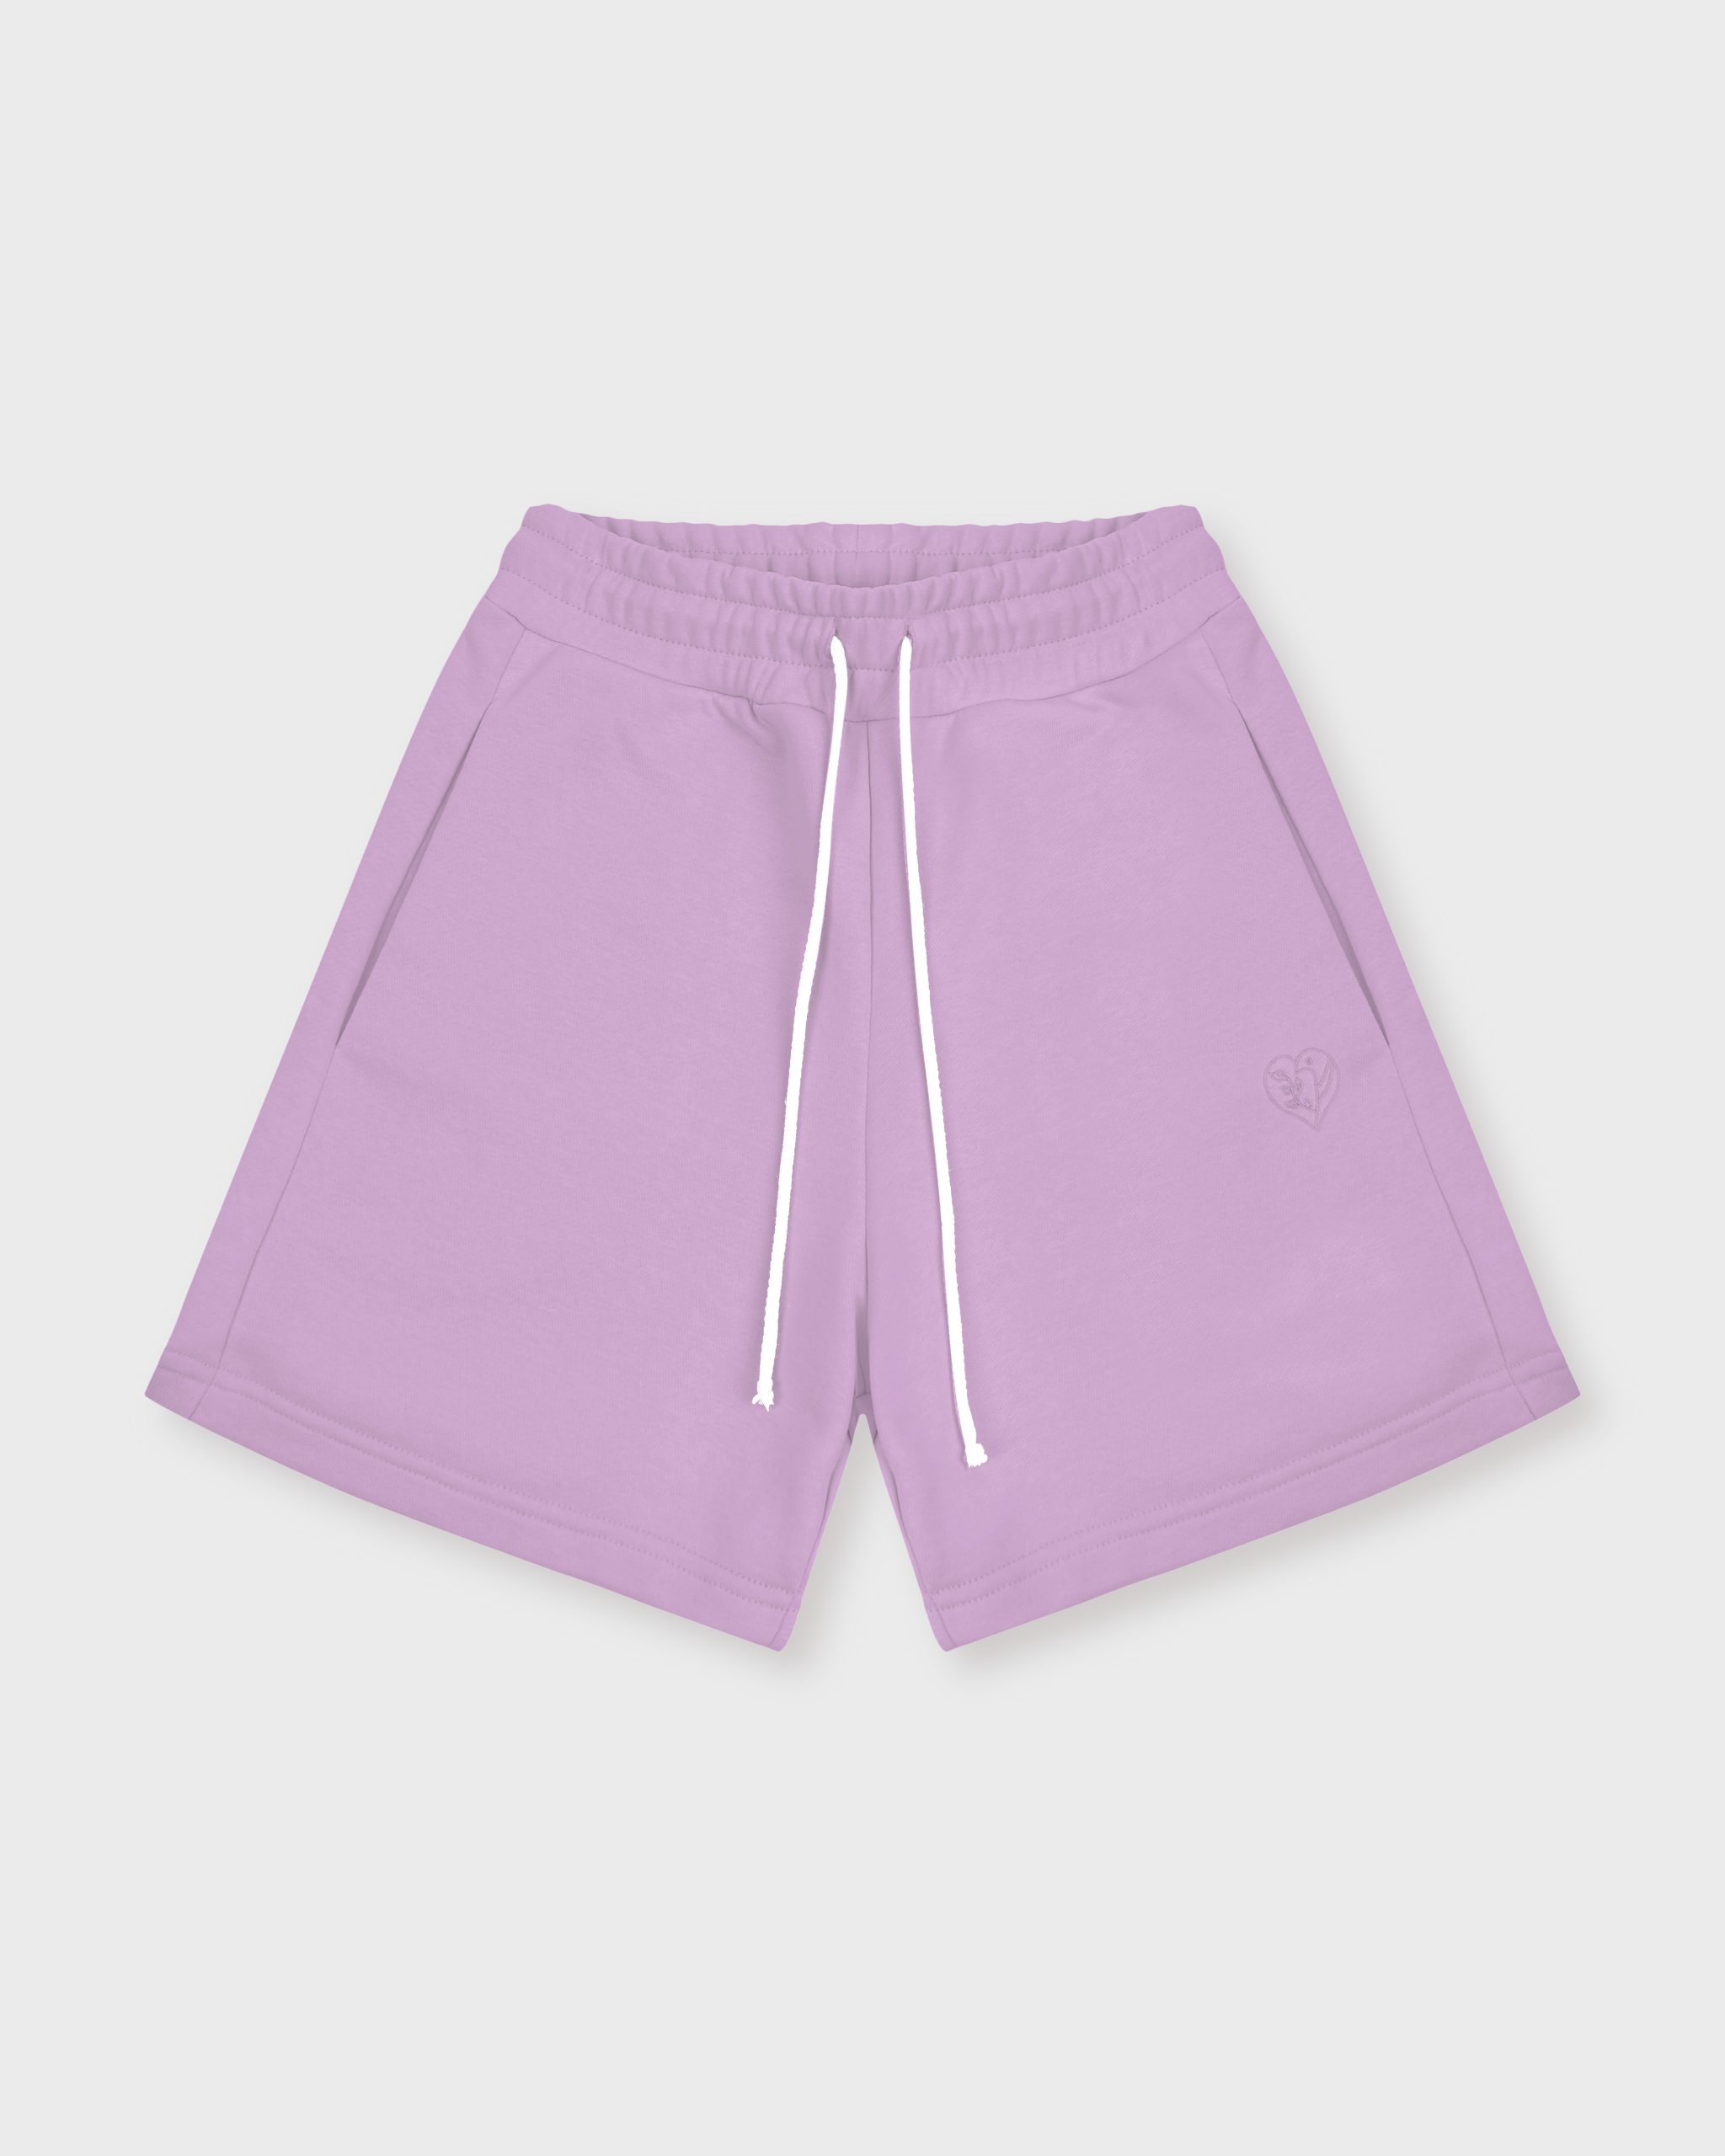 Повседневные шорты женские Atmosphere Summer vibes фиолетовые S